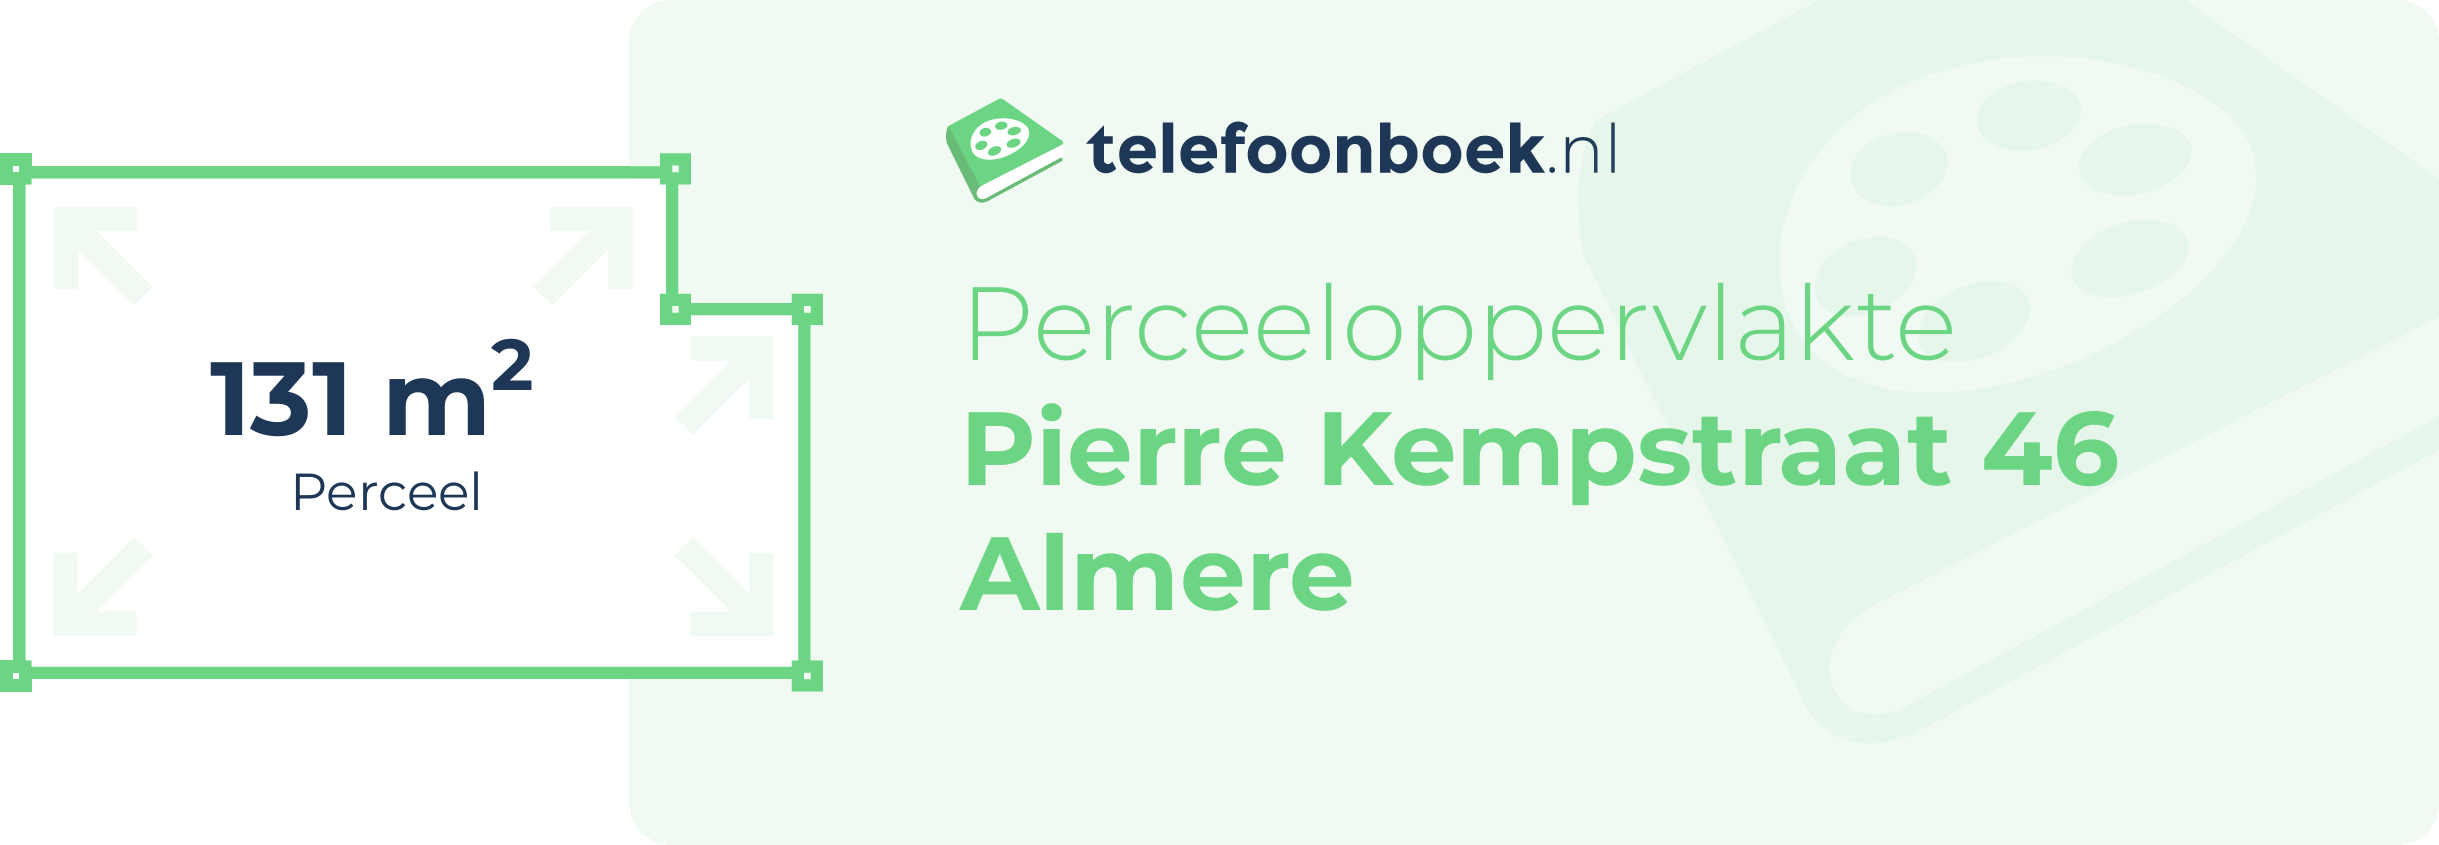 Perceeloppervlakte Pierre Kempstraat 46 Almere